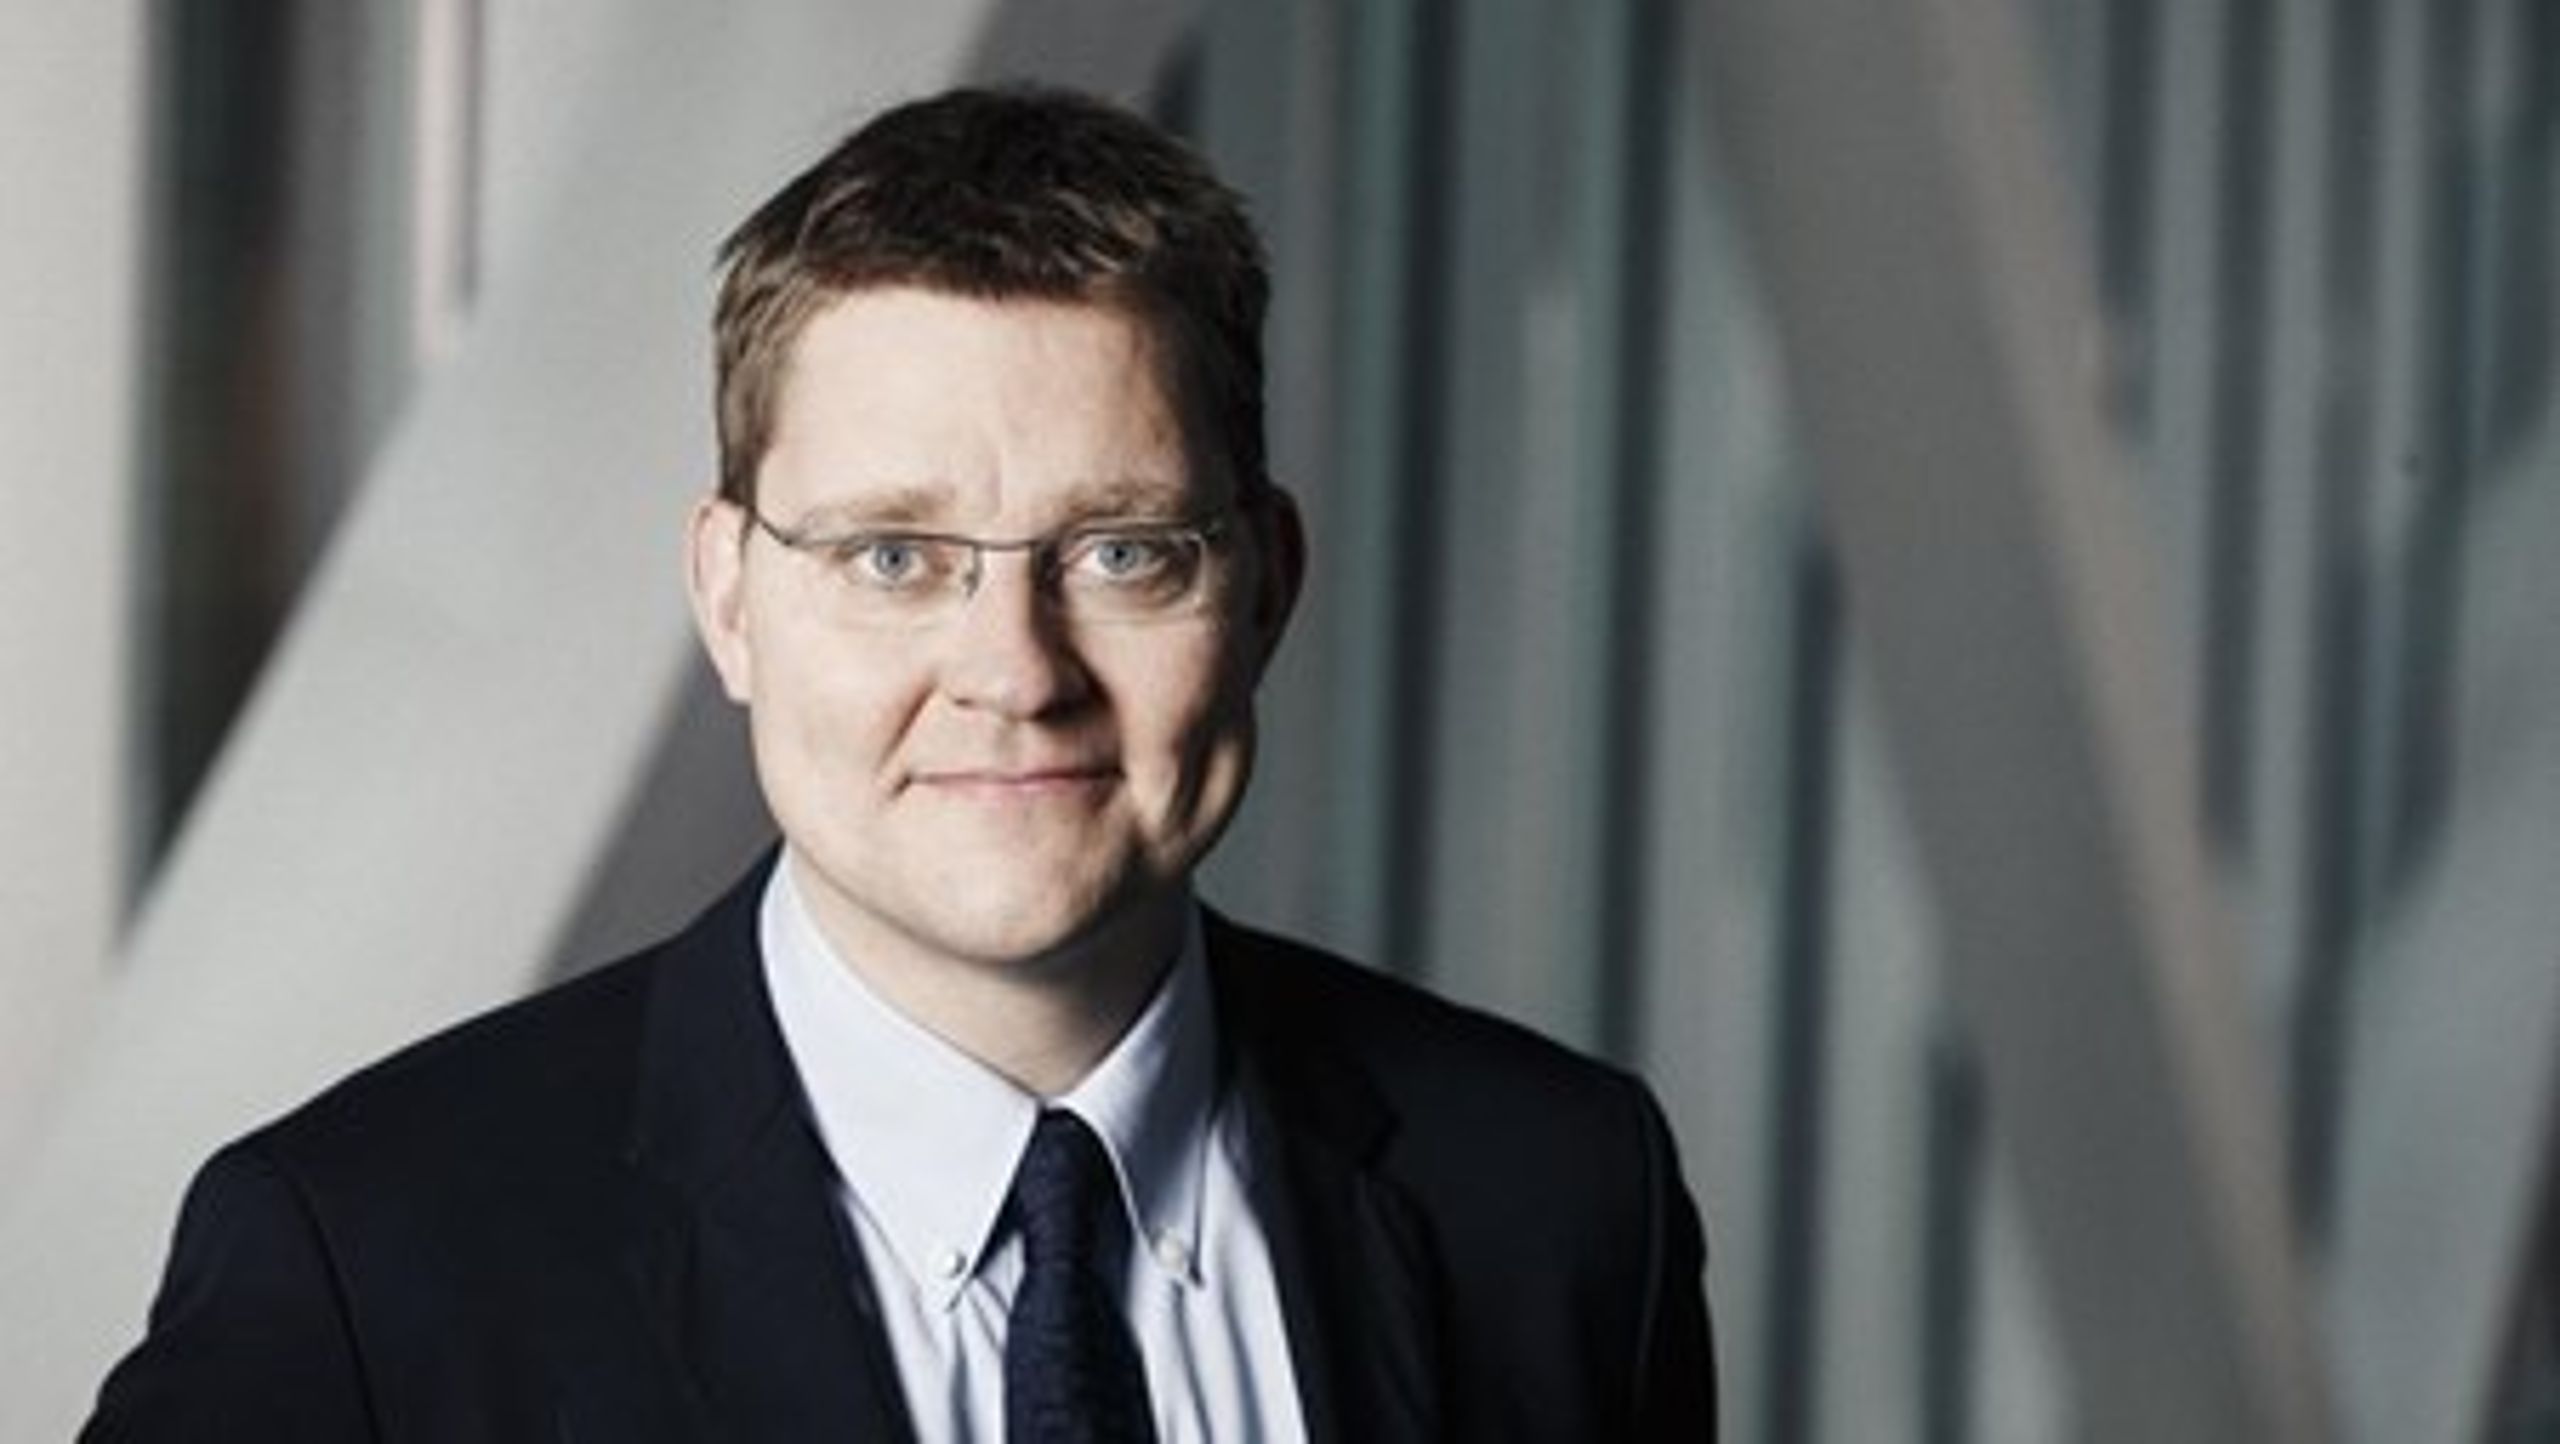 V og EL kræver svar fra klima- og energiminister Rasmus Helveg Petersen om regeringens begrundelse for at udsætte reformen af elmarkedet. DF støtter ikke en udsættelse.